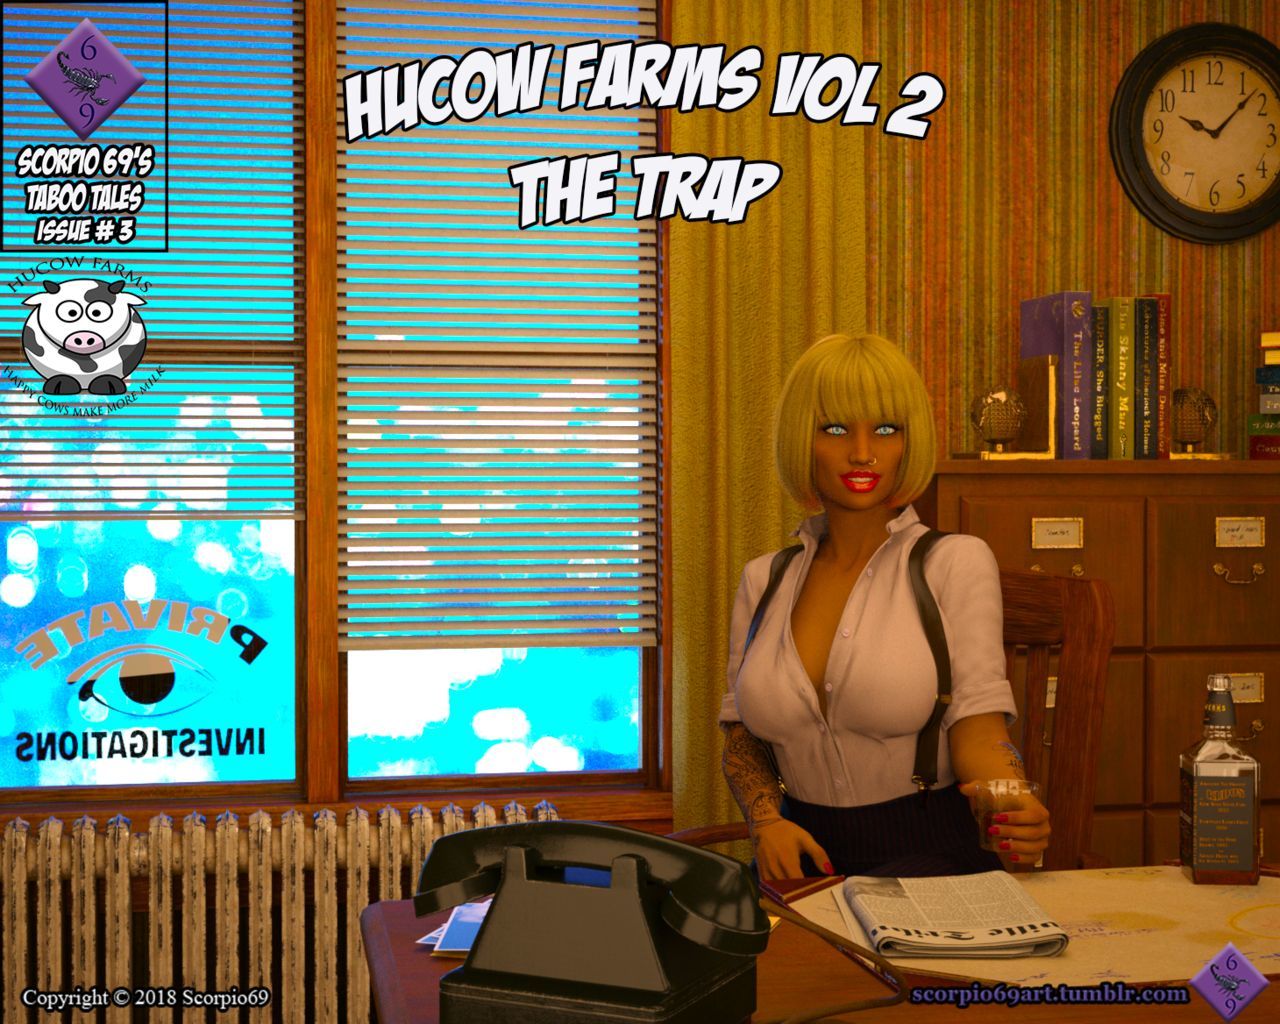 Hucow Farms Vol 2 - The Trap scorpio69 page 1